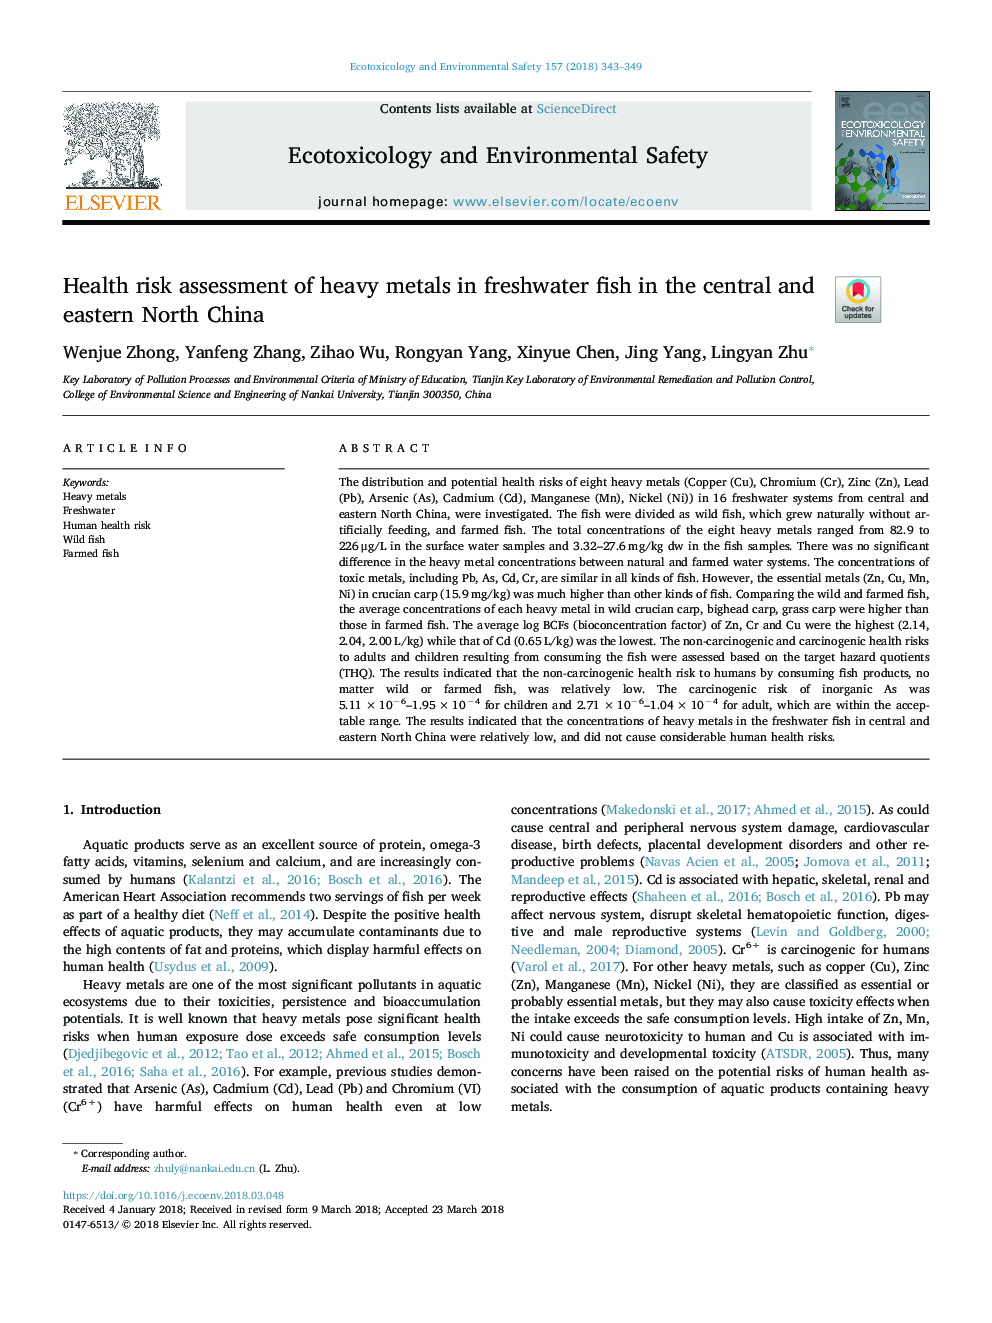 ارزیابی ریسک سلامت فلزات سنگین در ماهی های آب شیرین در شمال و شمال شرقی چین 